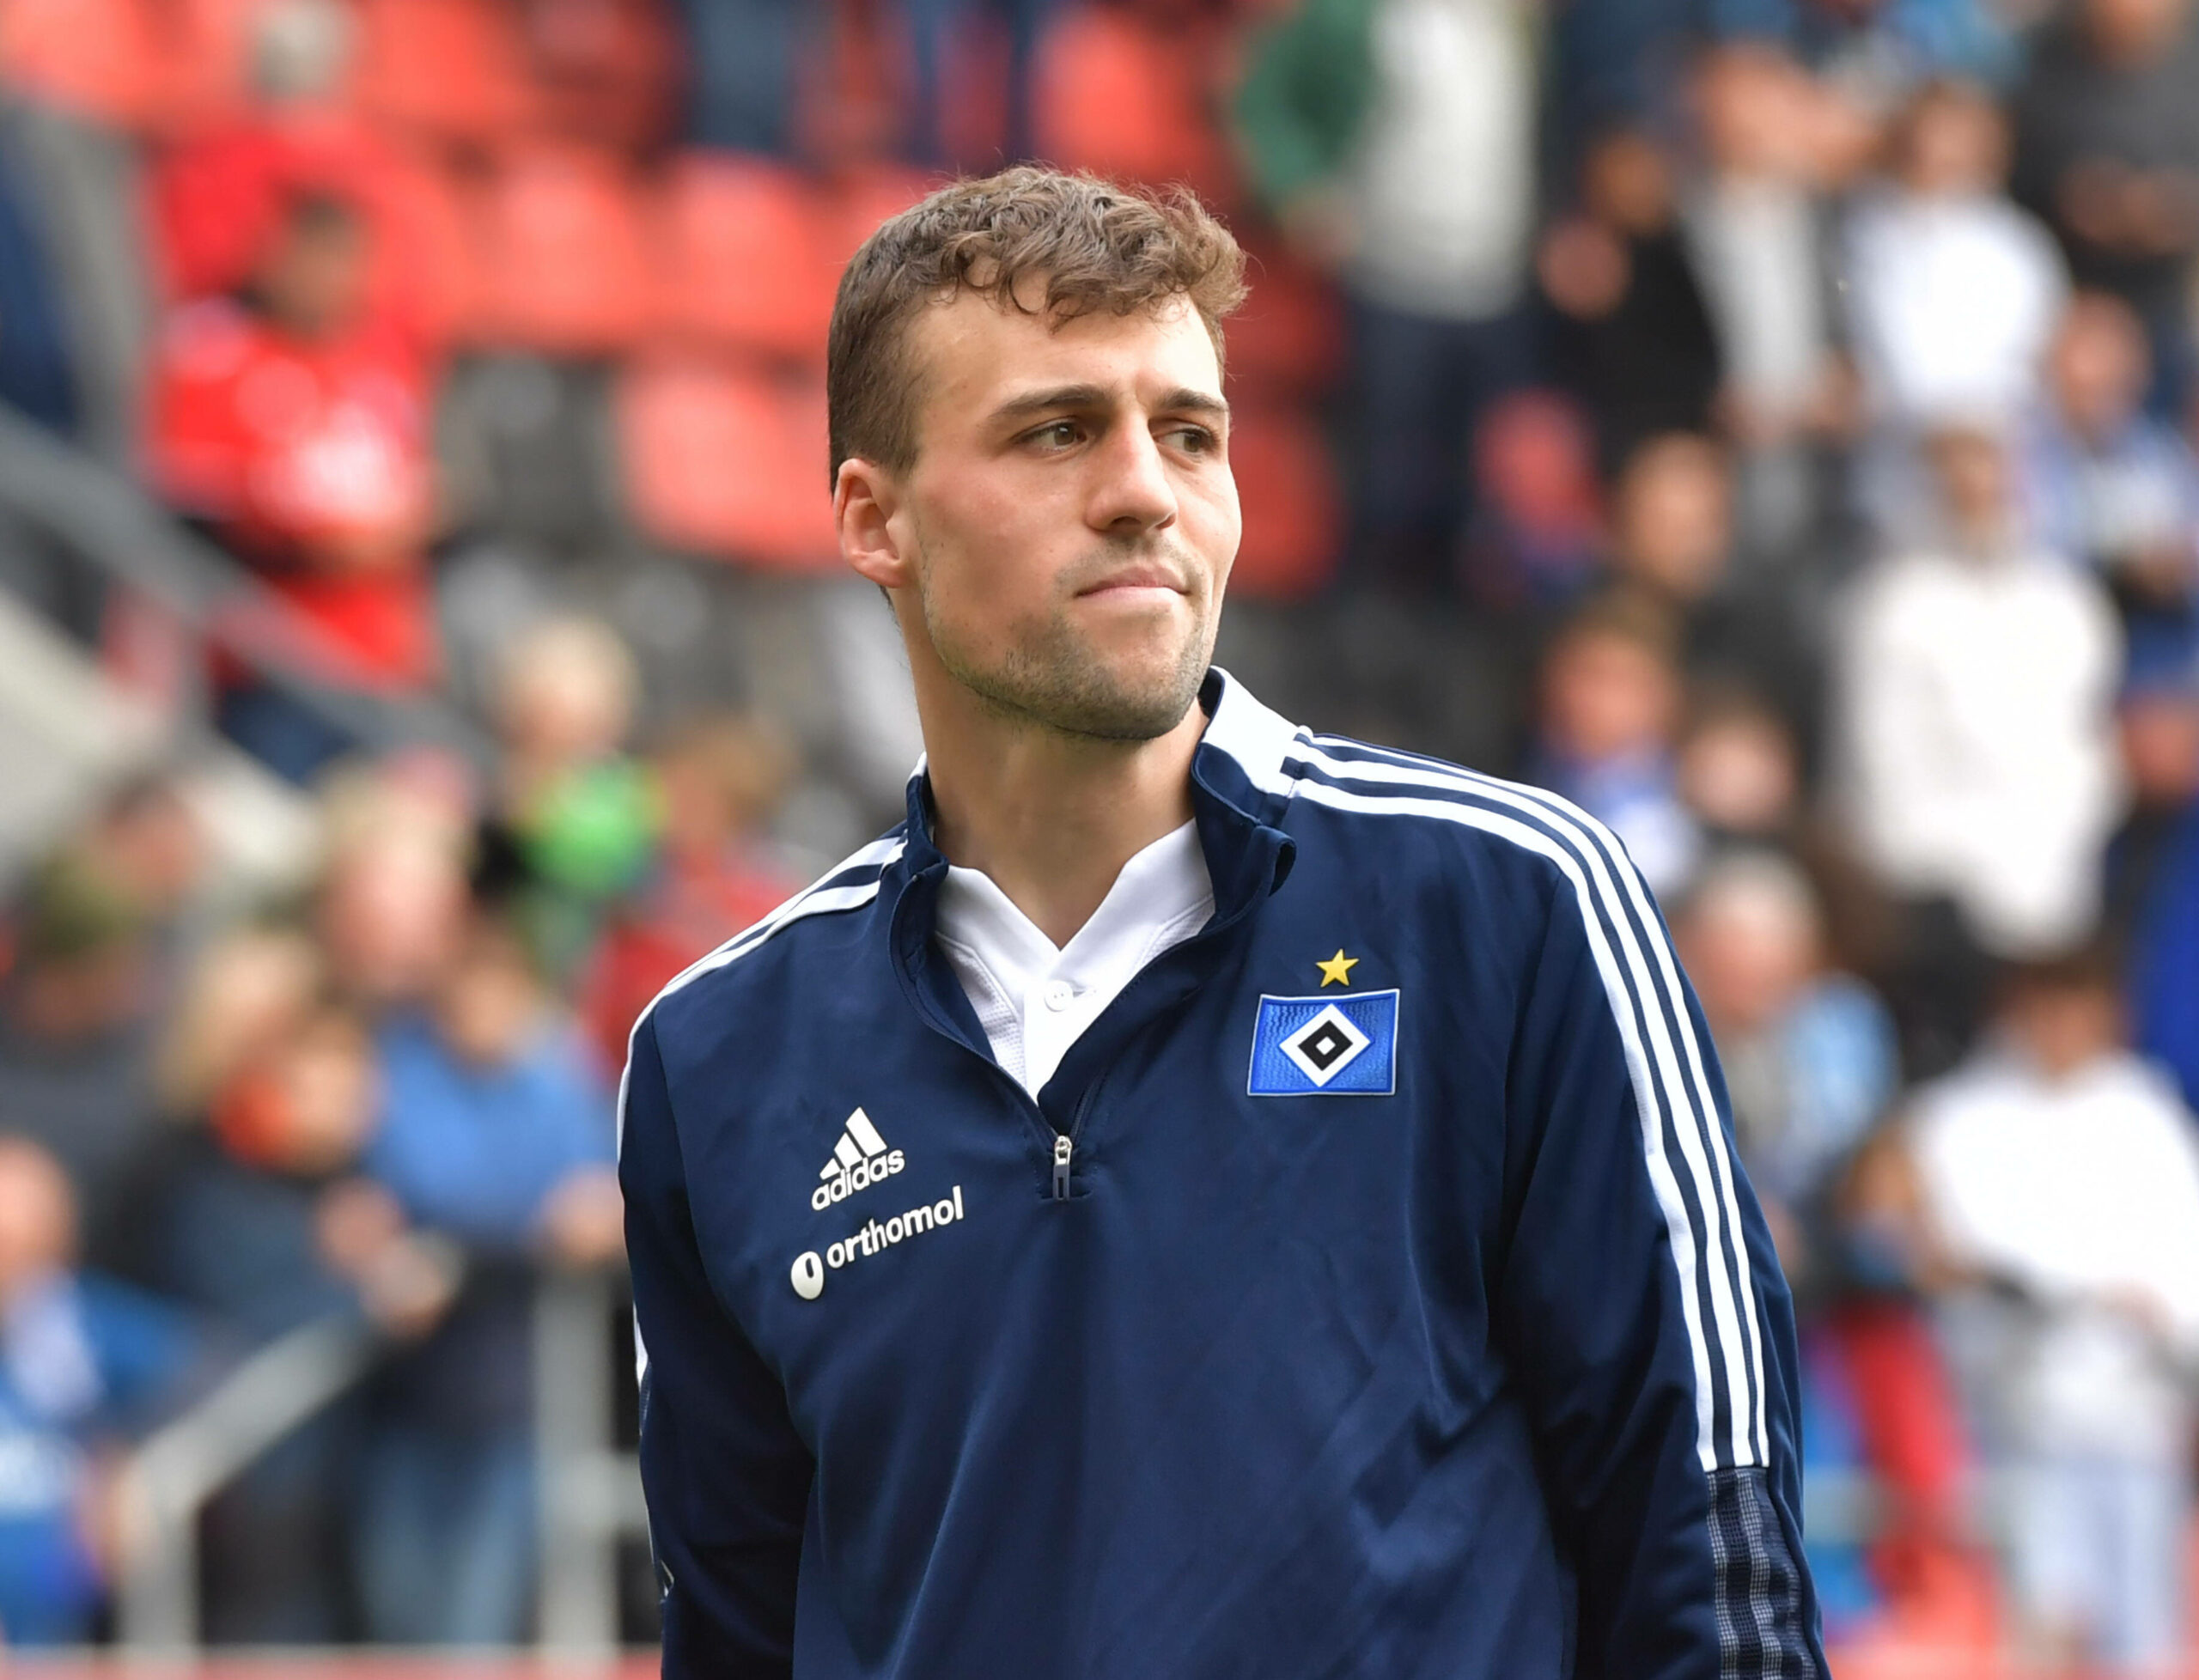 Jonas Meffert hofft im dritten Anlauf auf einen Erfolg in der Relegation.